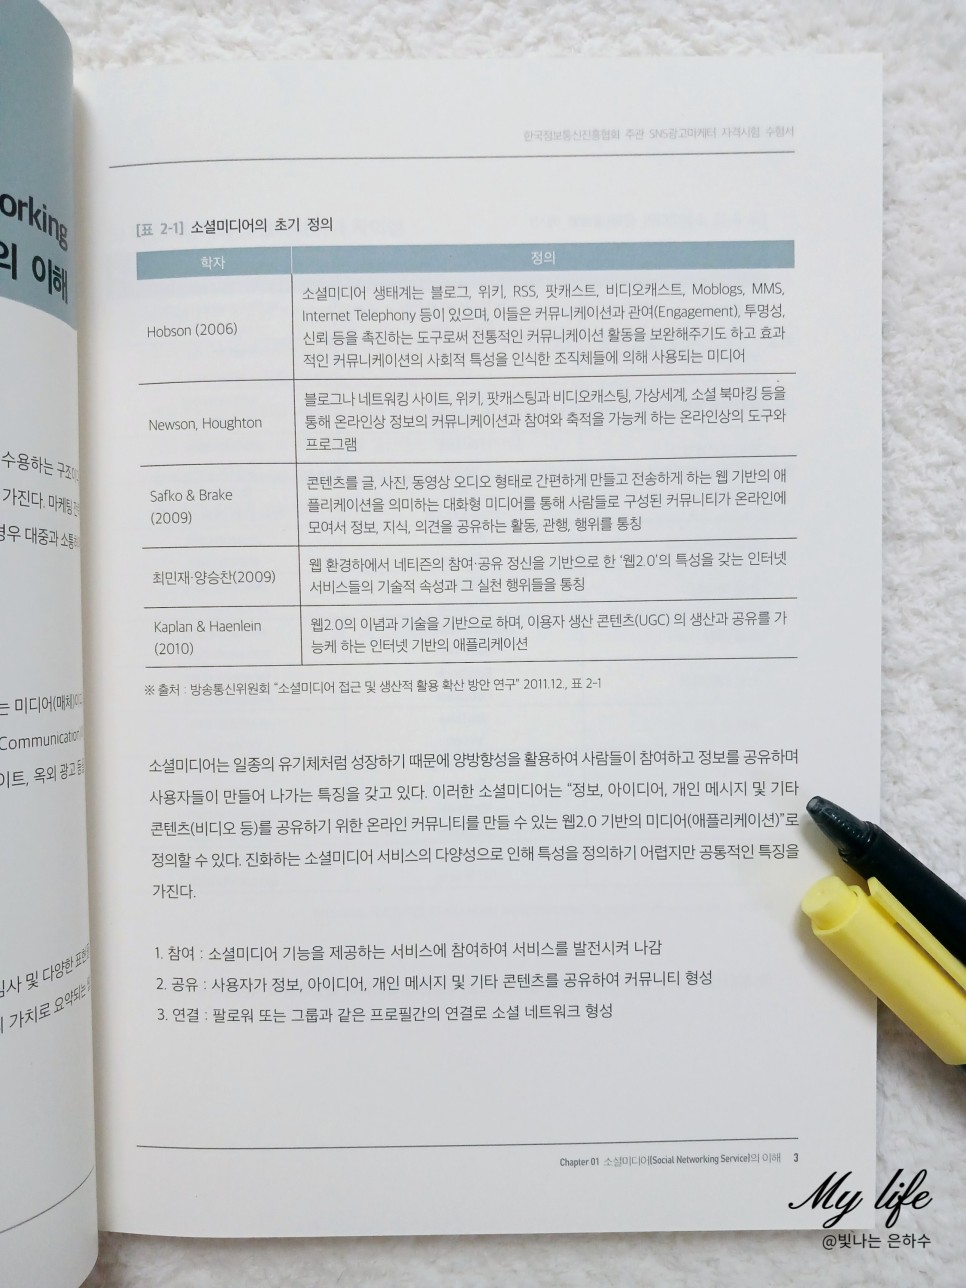 SNS광고마케터 1급 신간 책추천 자격증 시험 소개